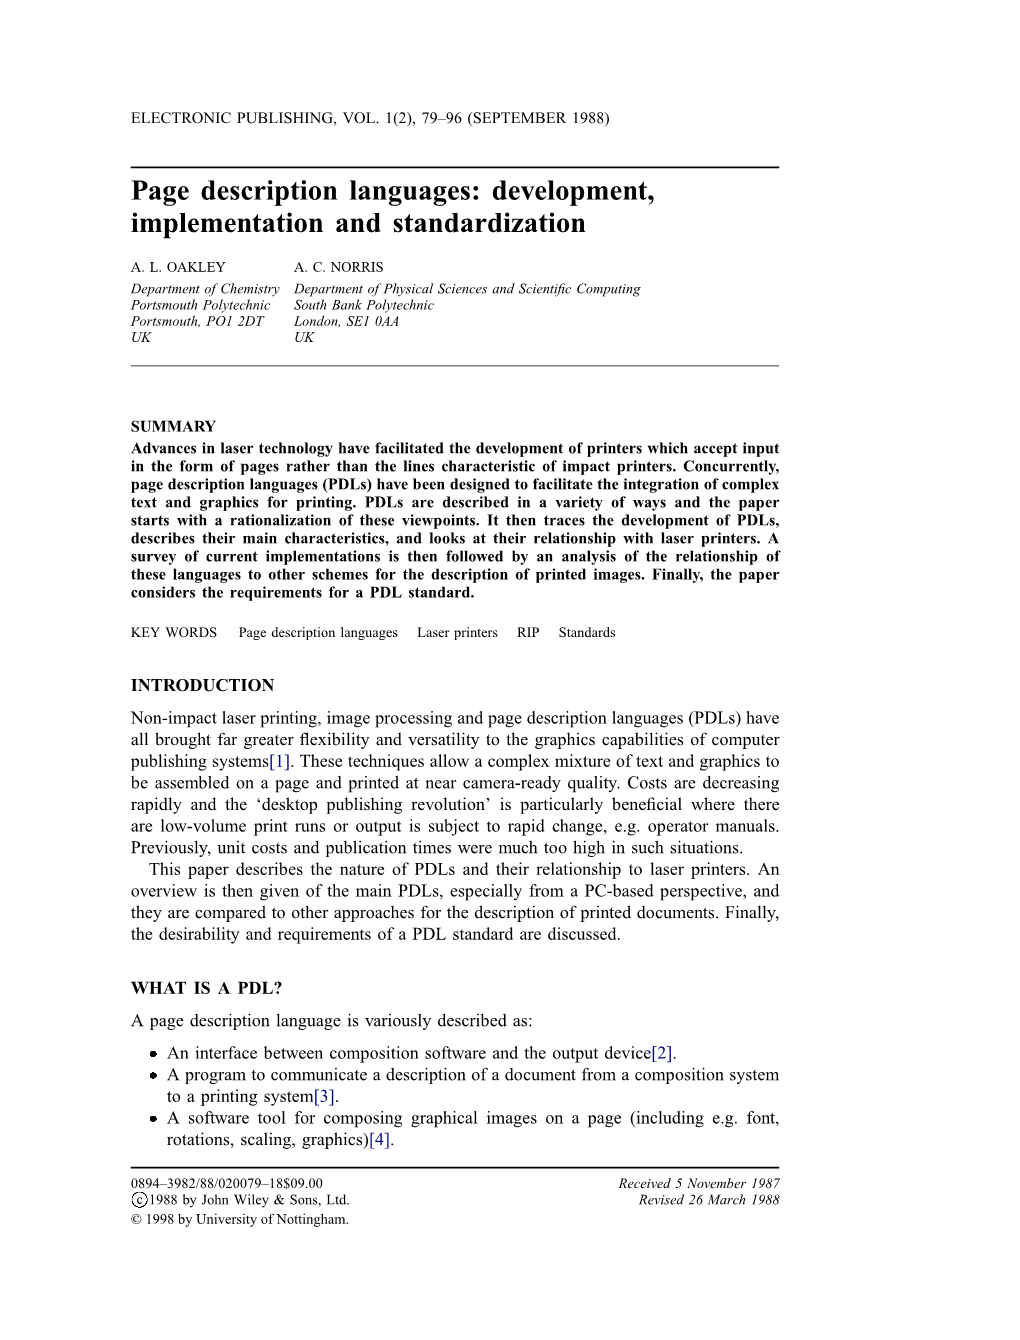 Page Description Languages: Development, Implementation and Standardization